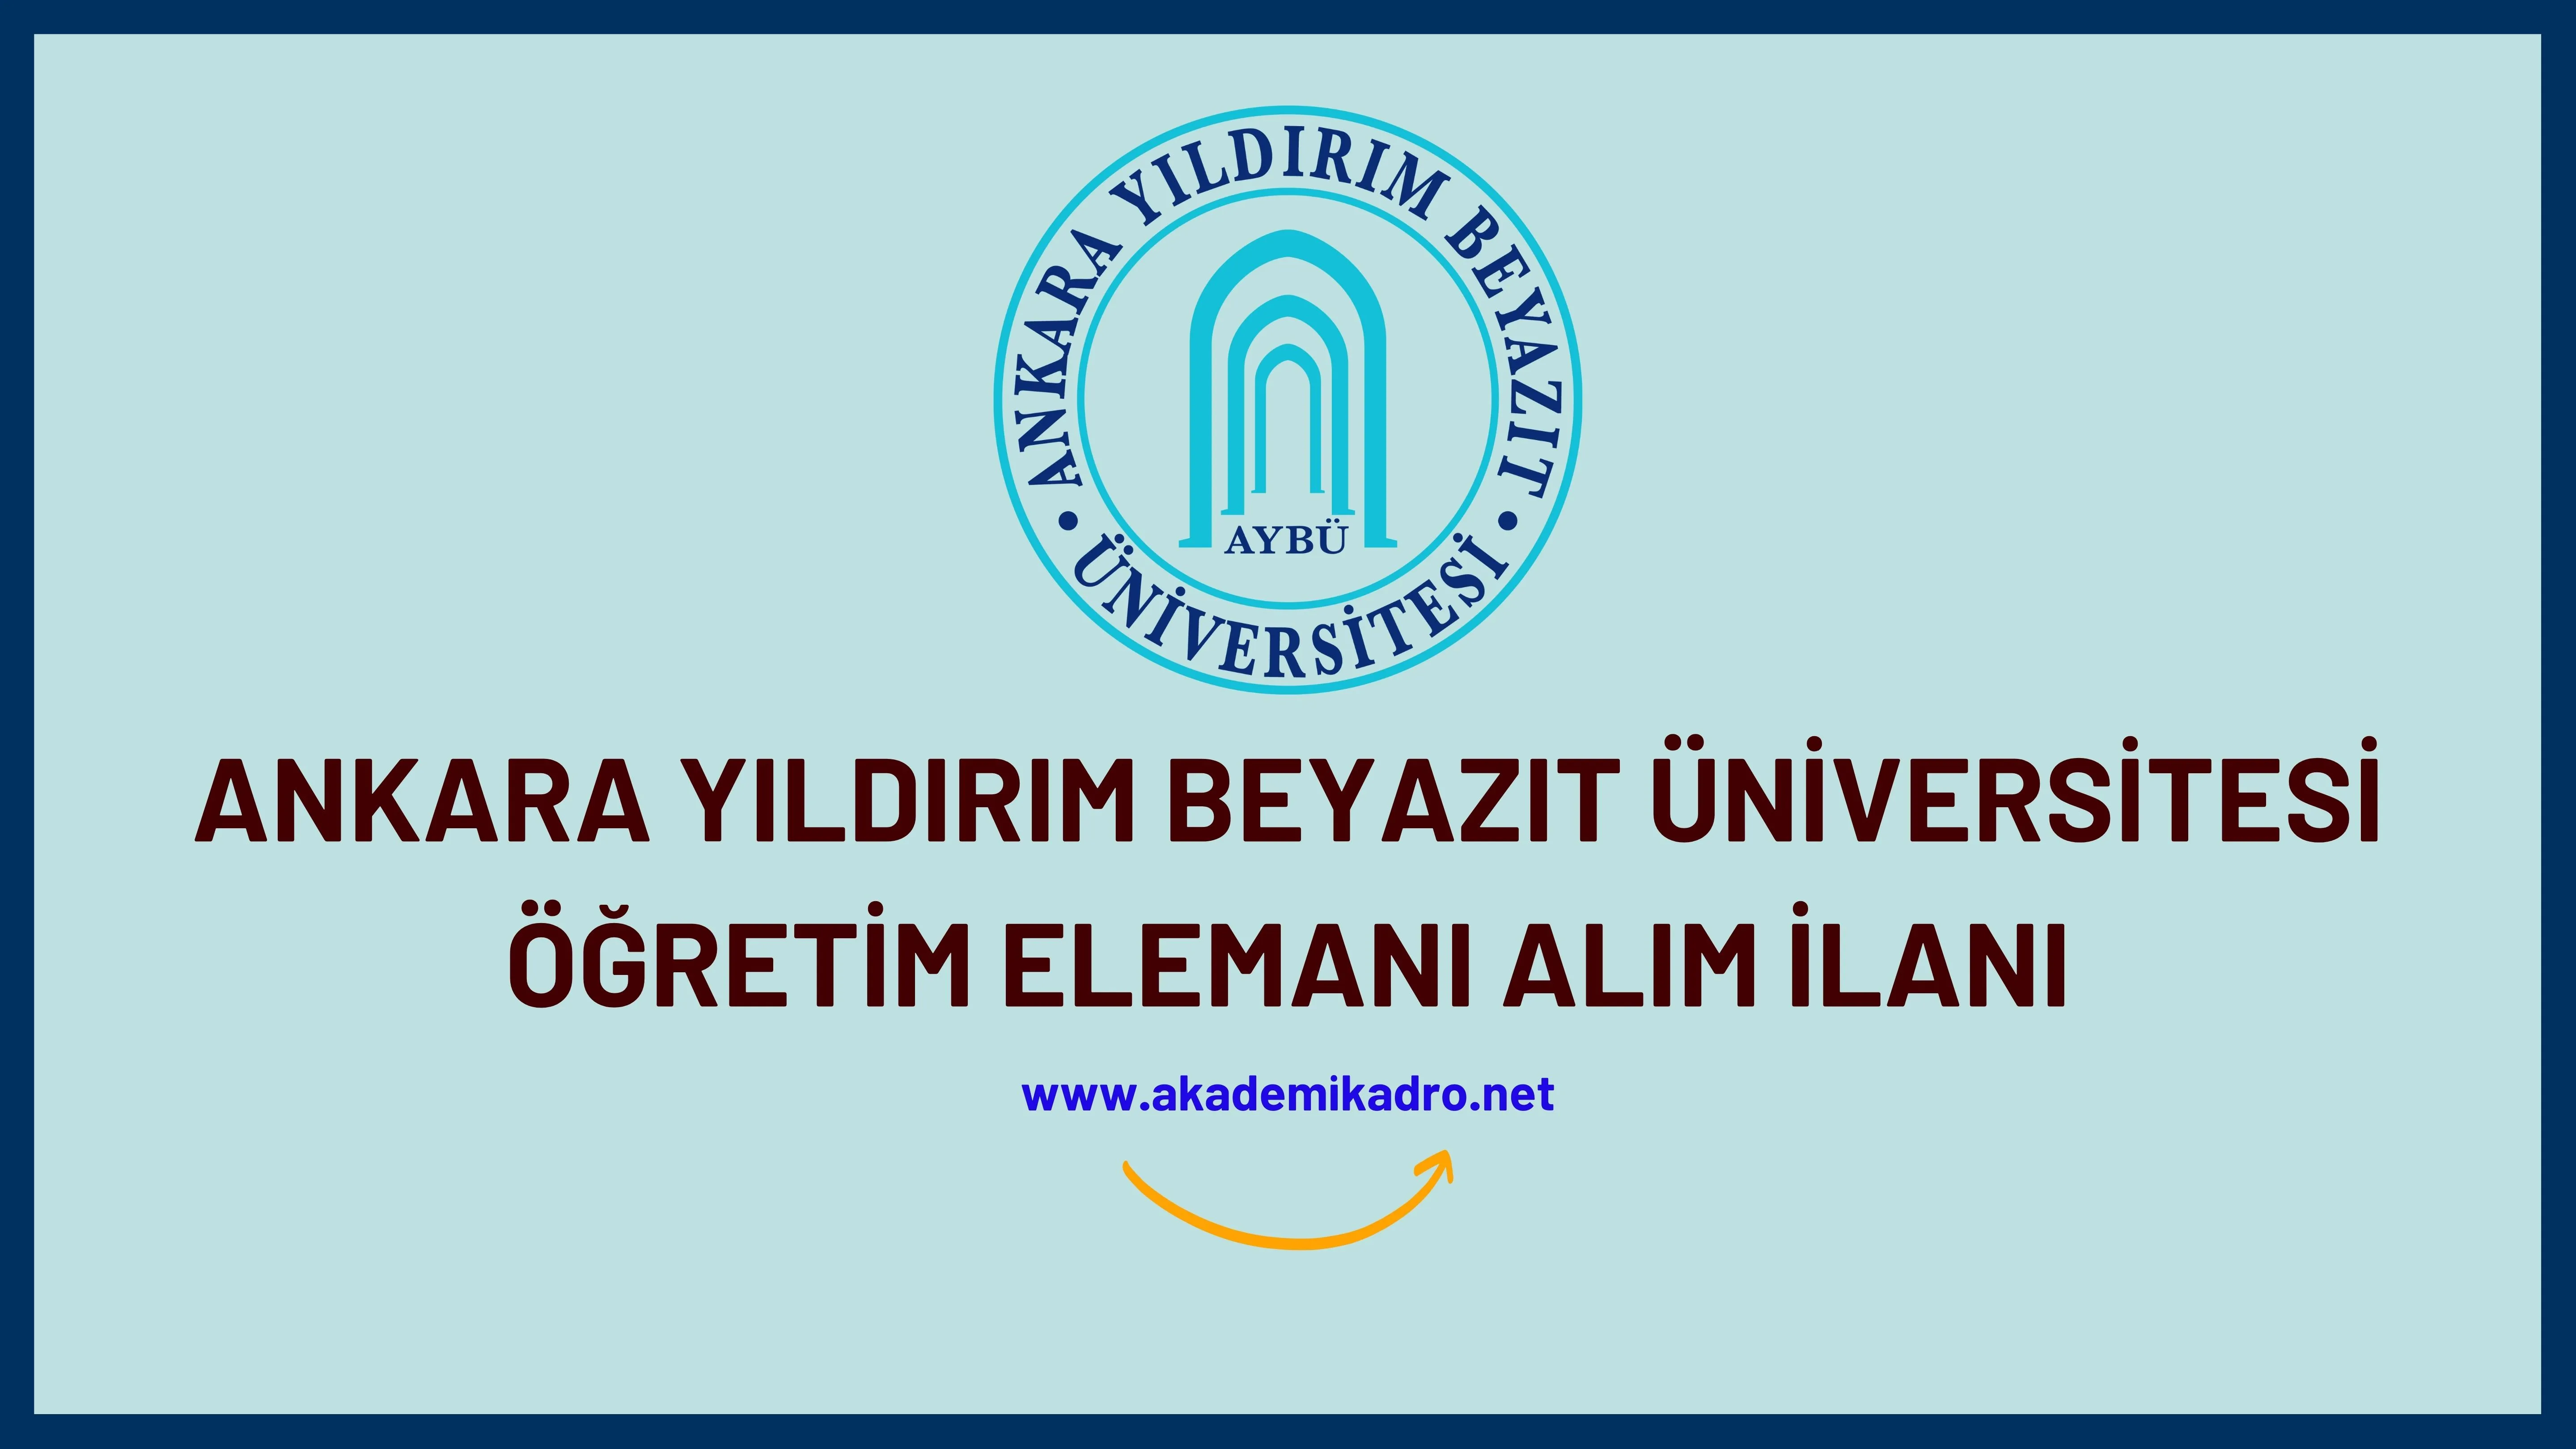 Ankara Yıldırım Beyazıt Üniversitesi 3 Araştırma görevlisi, 5 Öğretim görevlisi ve birçok alandan 70 Öğretim üyesi alacak.